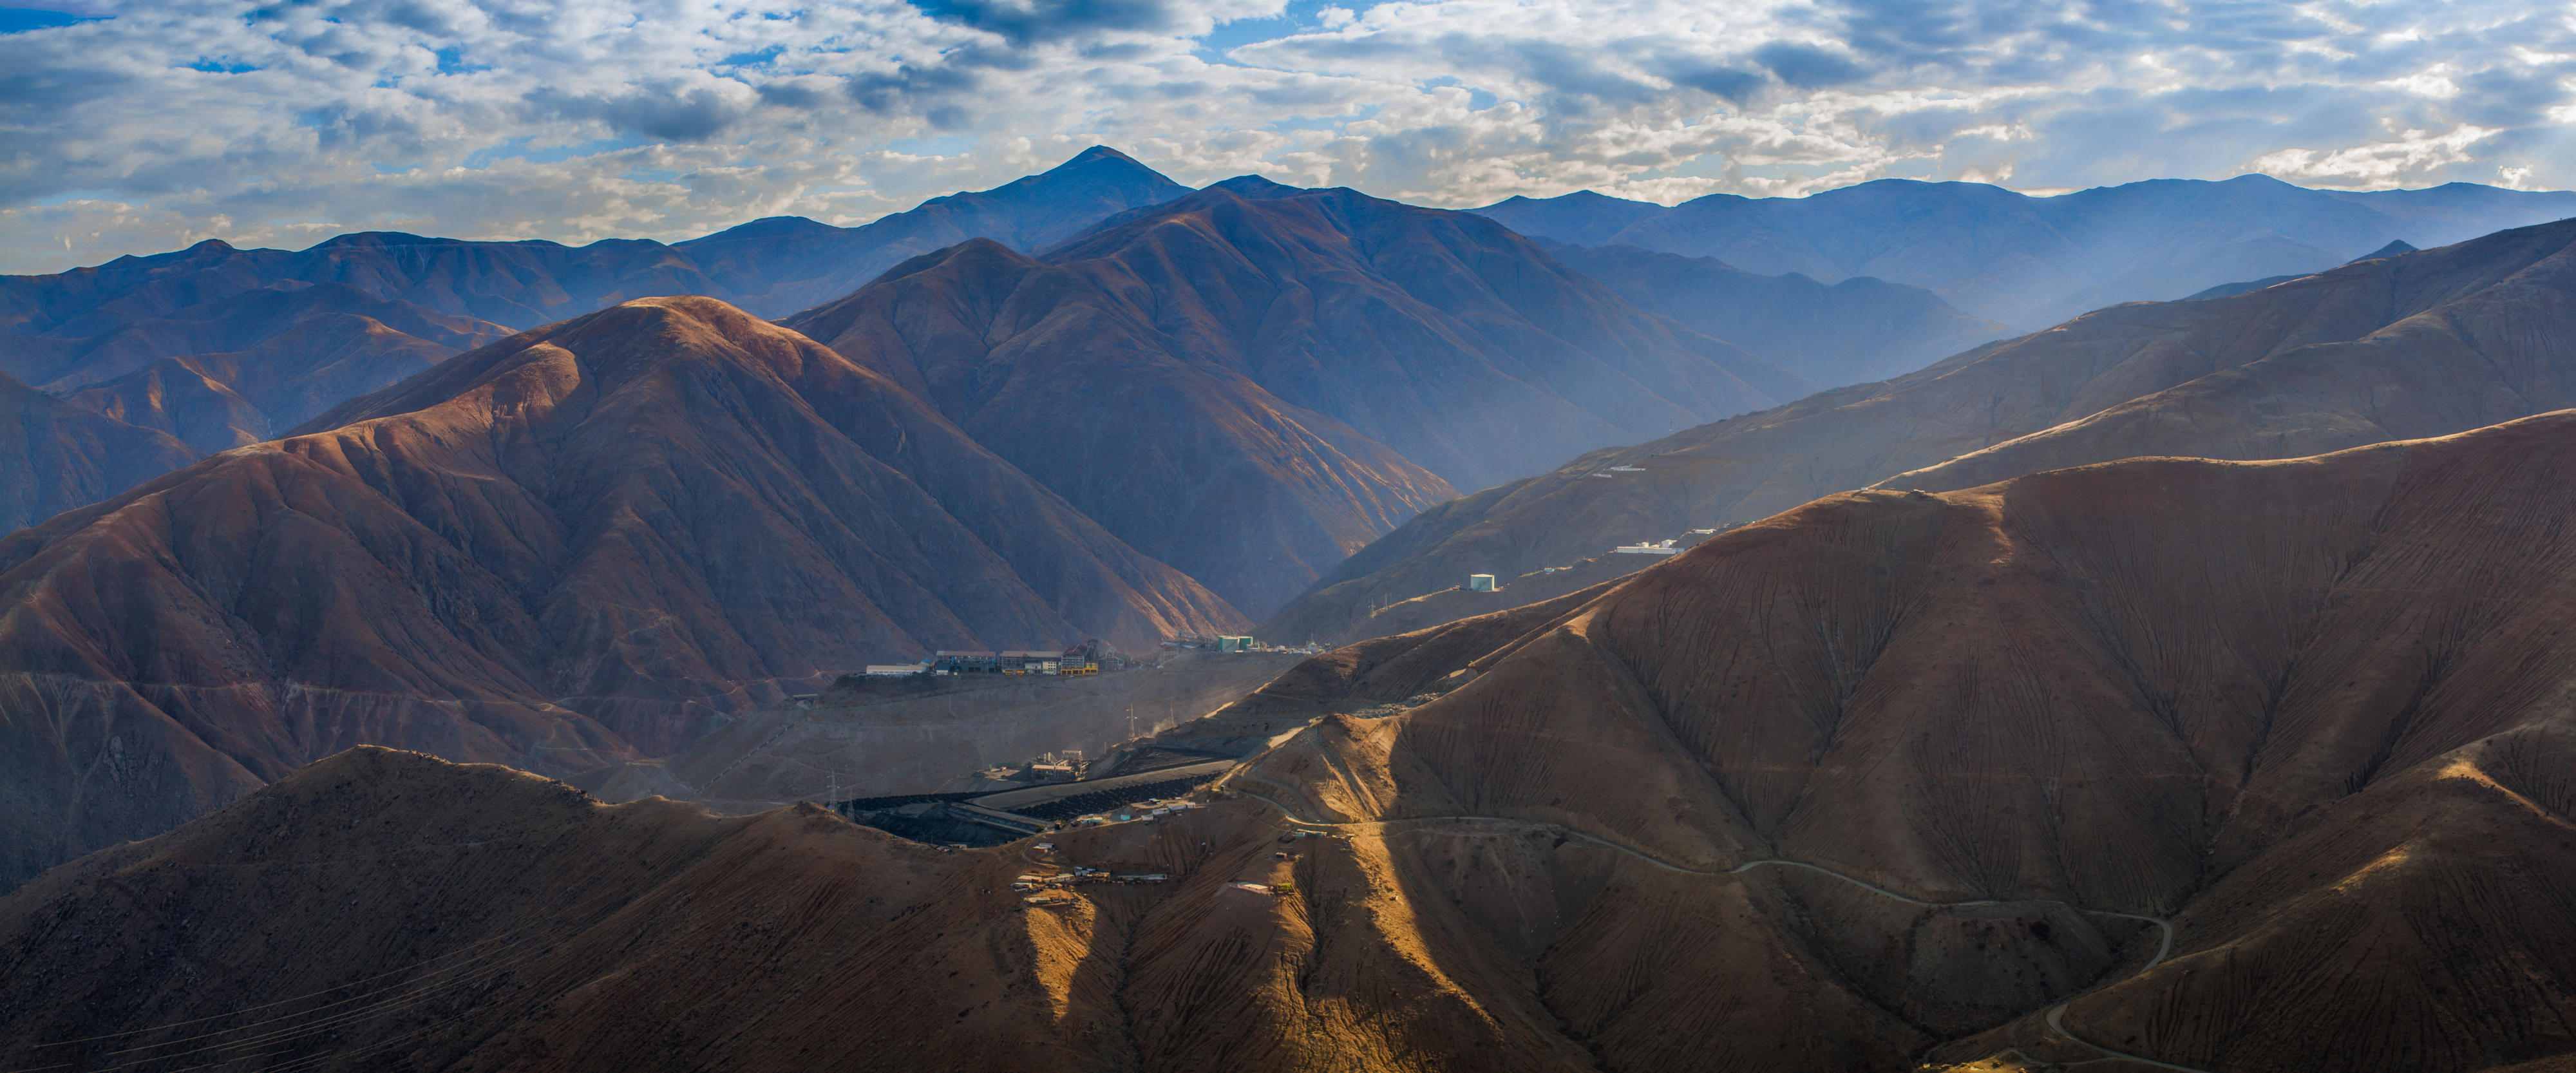 Cerro Lindo Mine in Peru